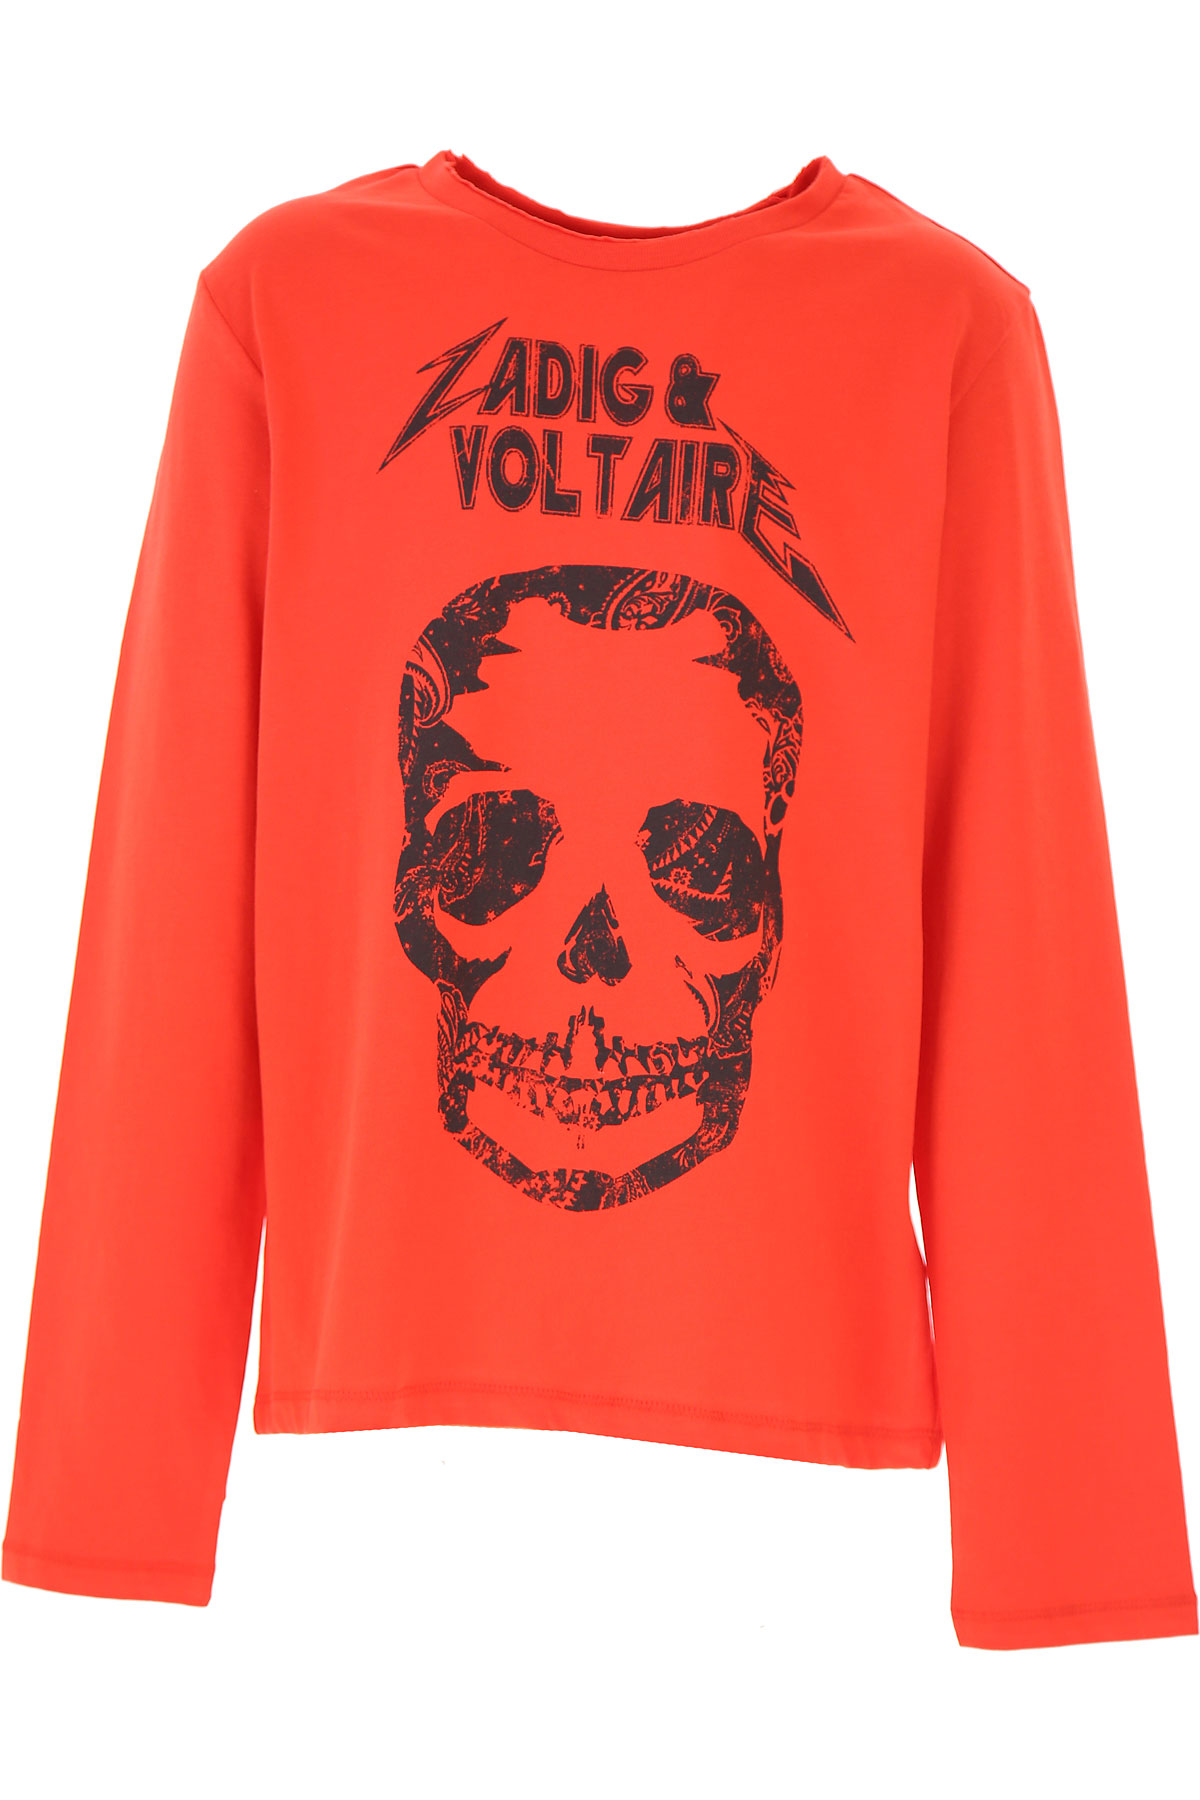 Zadig & Voltaire Kinder T-Shirt für Jungen Günstig im Sale, Rot, Baumwolle, 2017, 10Y 12Y 14Y 16Y 8Y